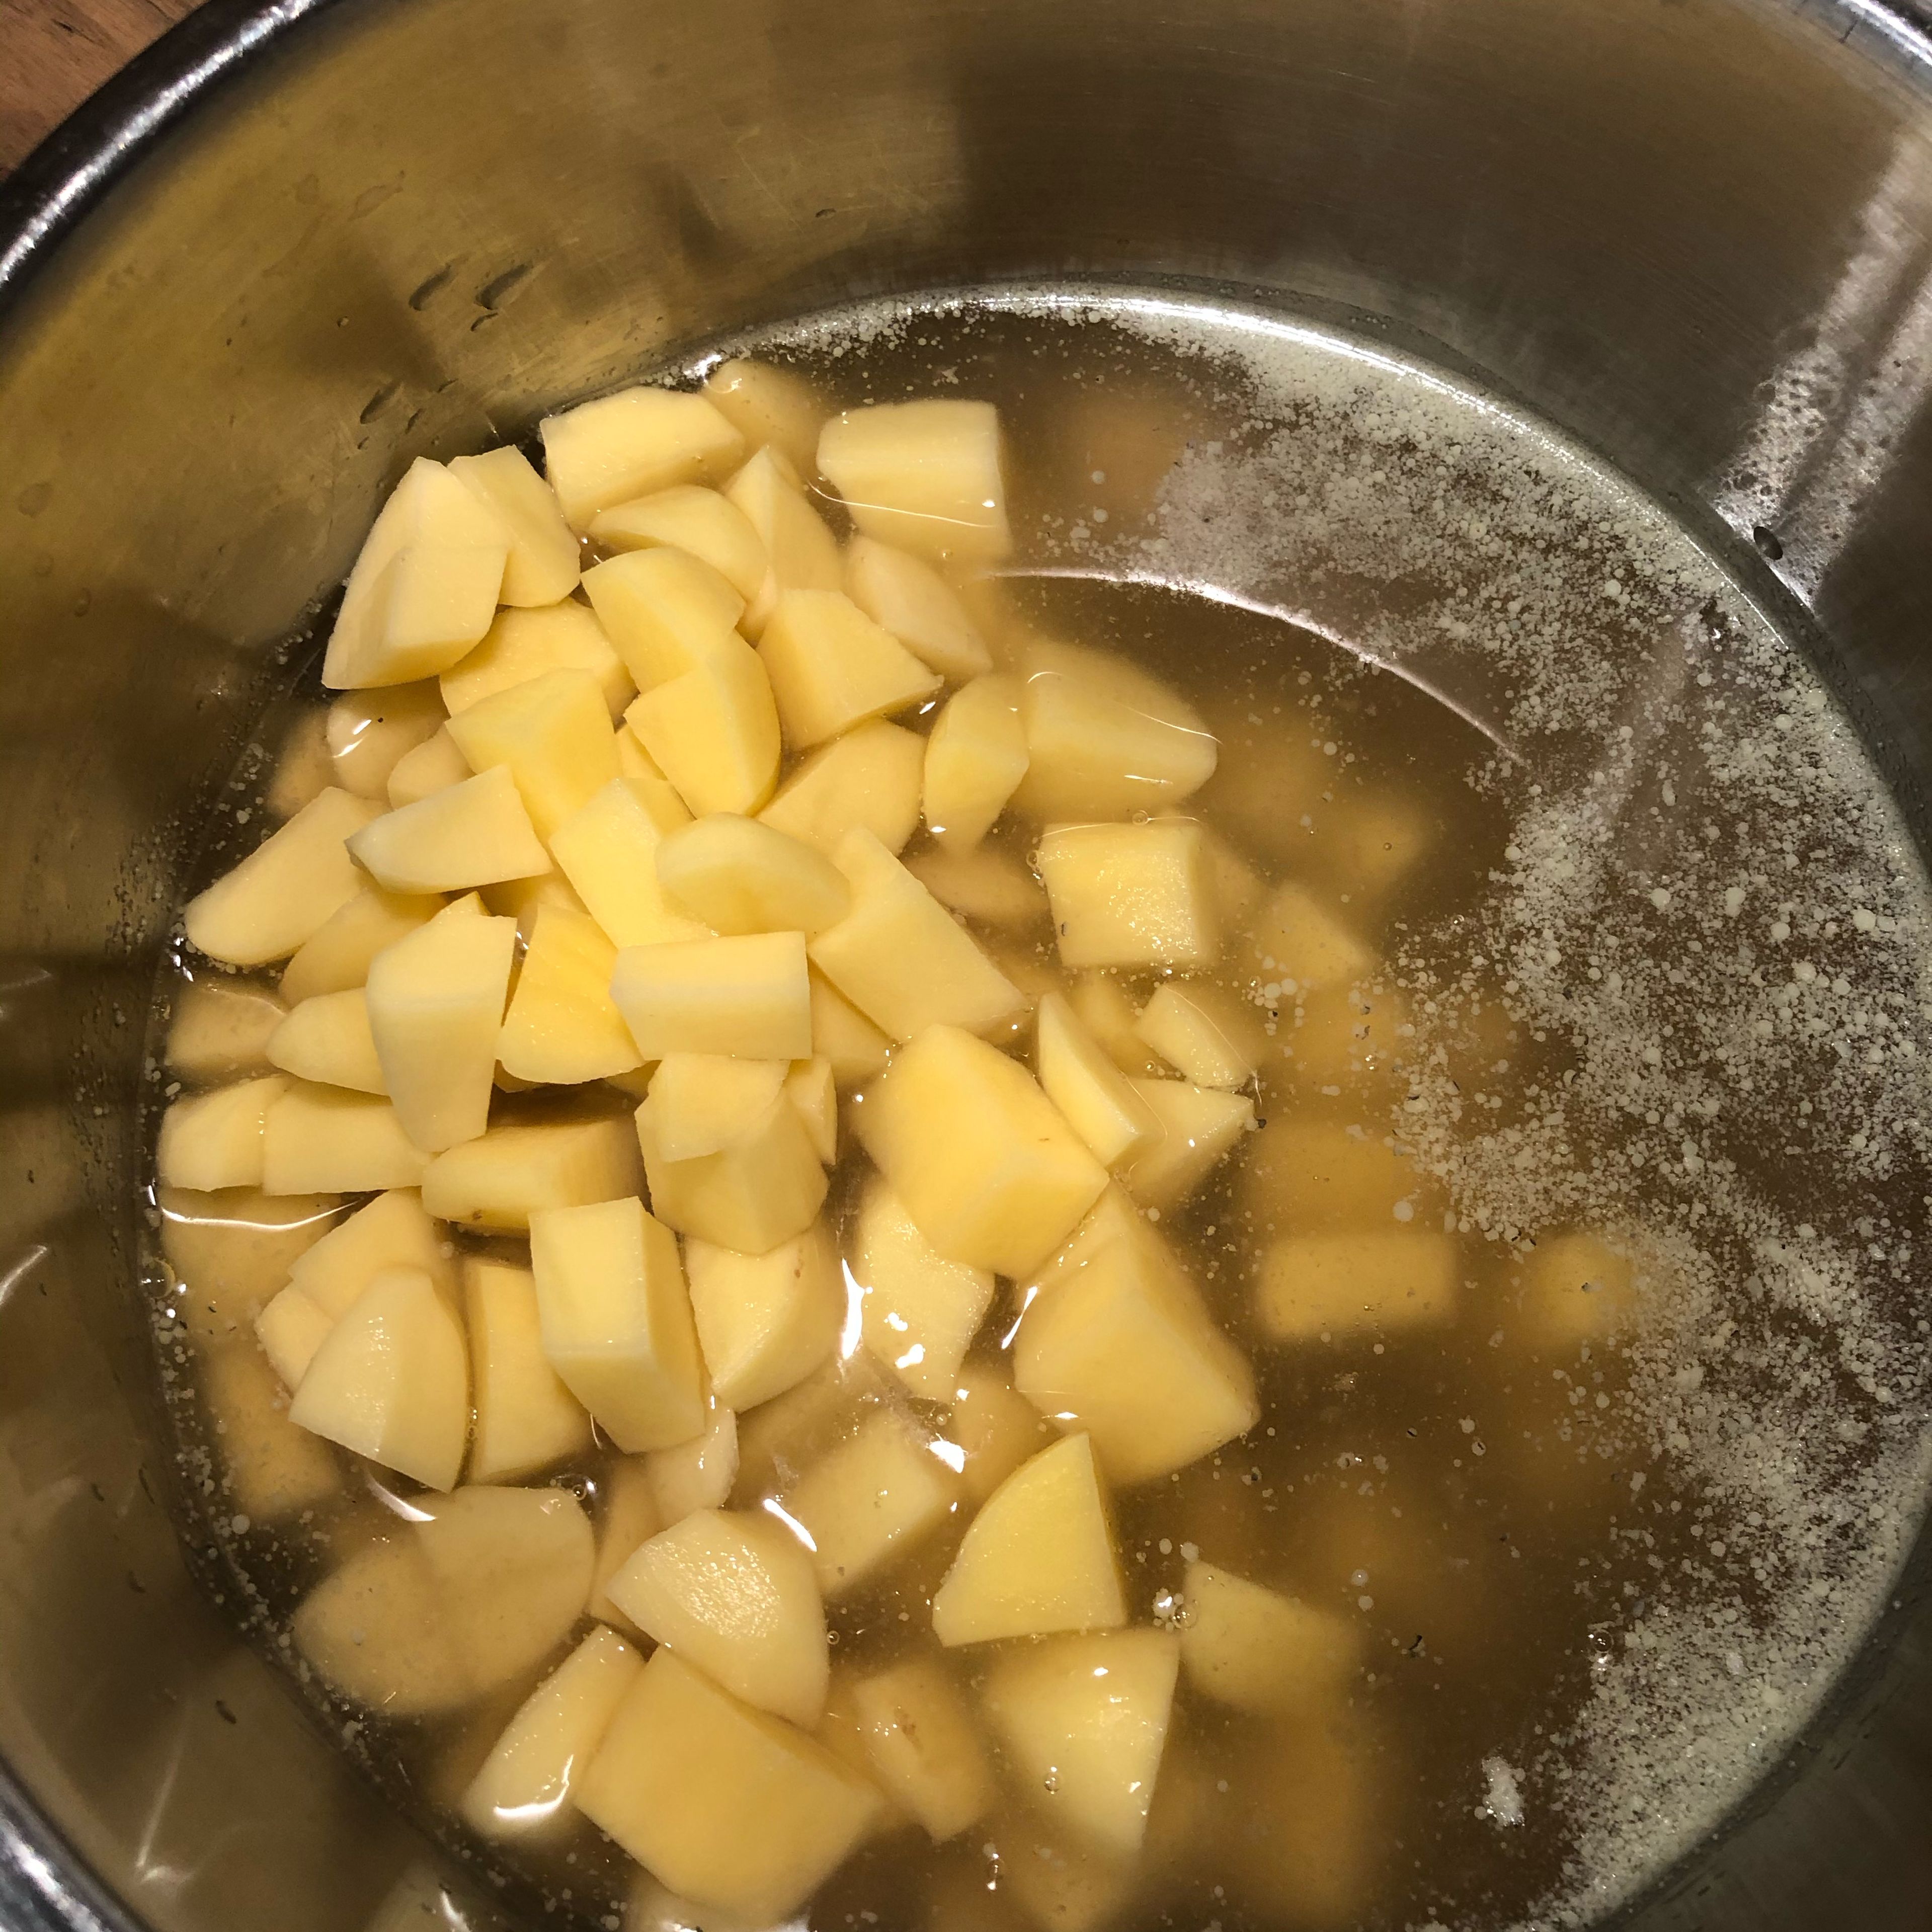 Kartoffel im Liter Gemüsebrühe (am besten frische, ansonsten geht auch Gemüsefond) geben und zum kochen bringen. 5 Minuten kochen lassen